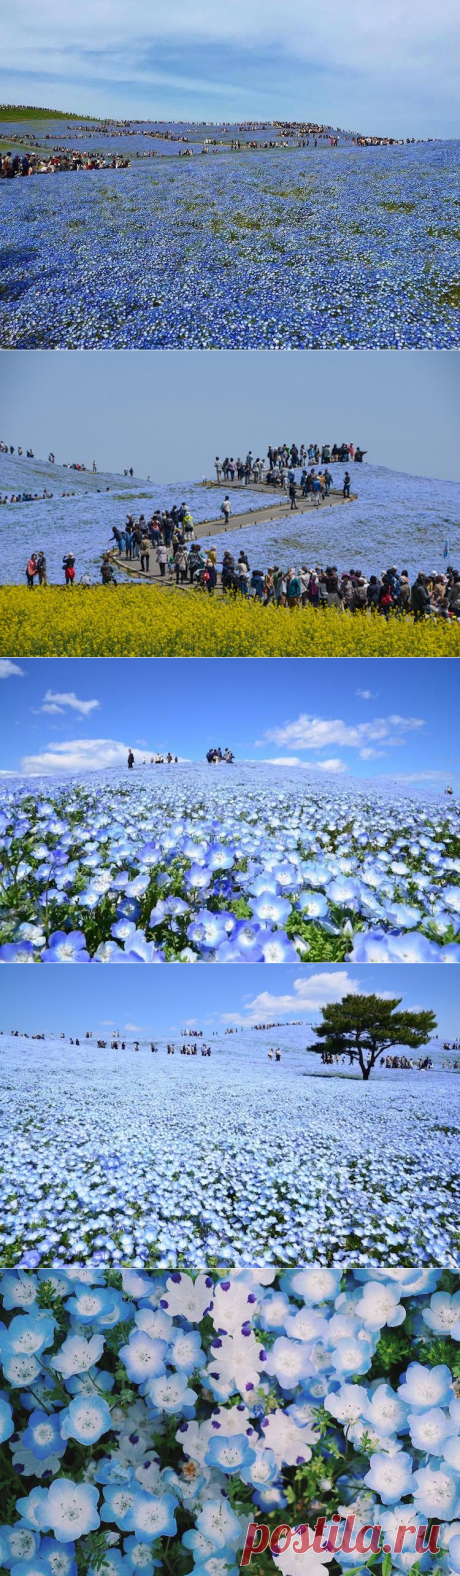 Как цветут немофилы в Японии / Туристический спутник